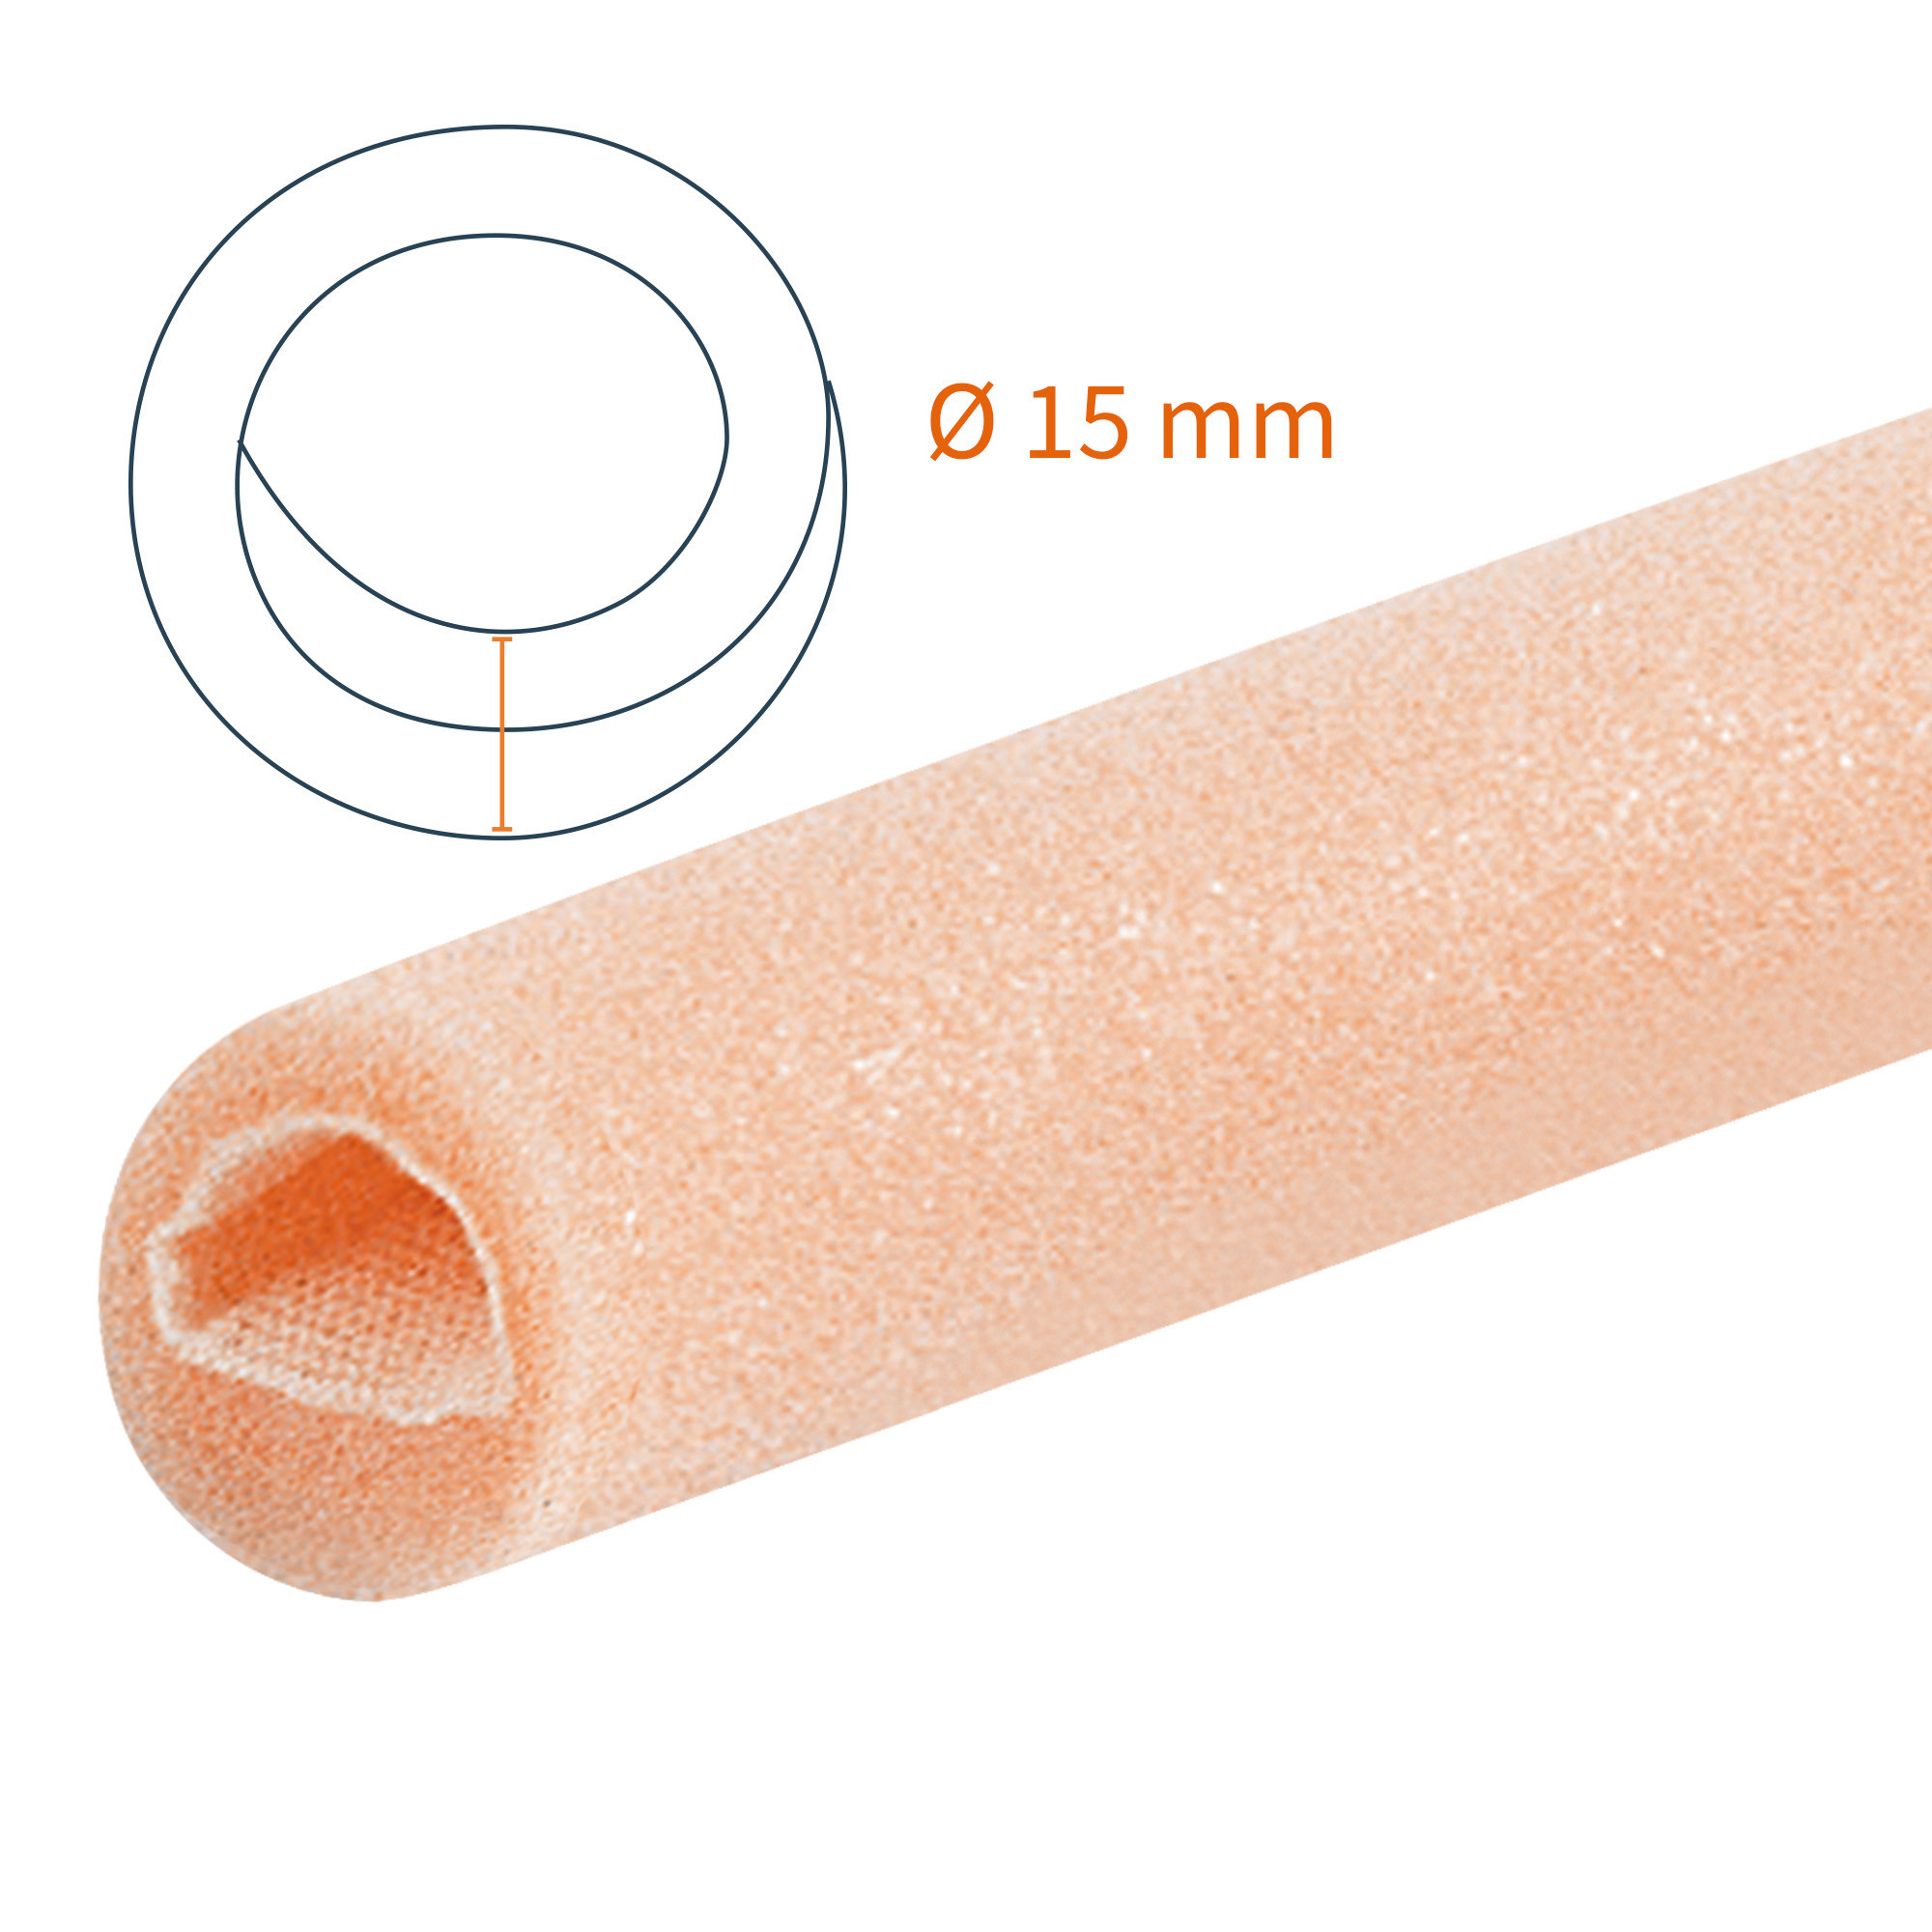 Protezione tubolare a doppio strato Tubifoam 15 mm AX 12 pz